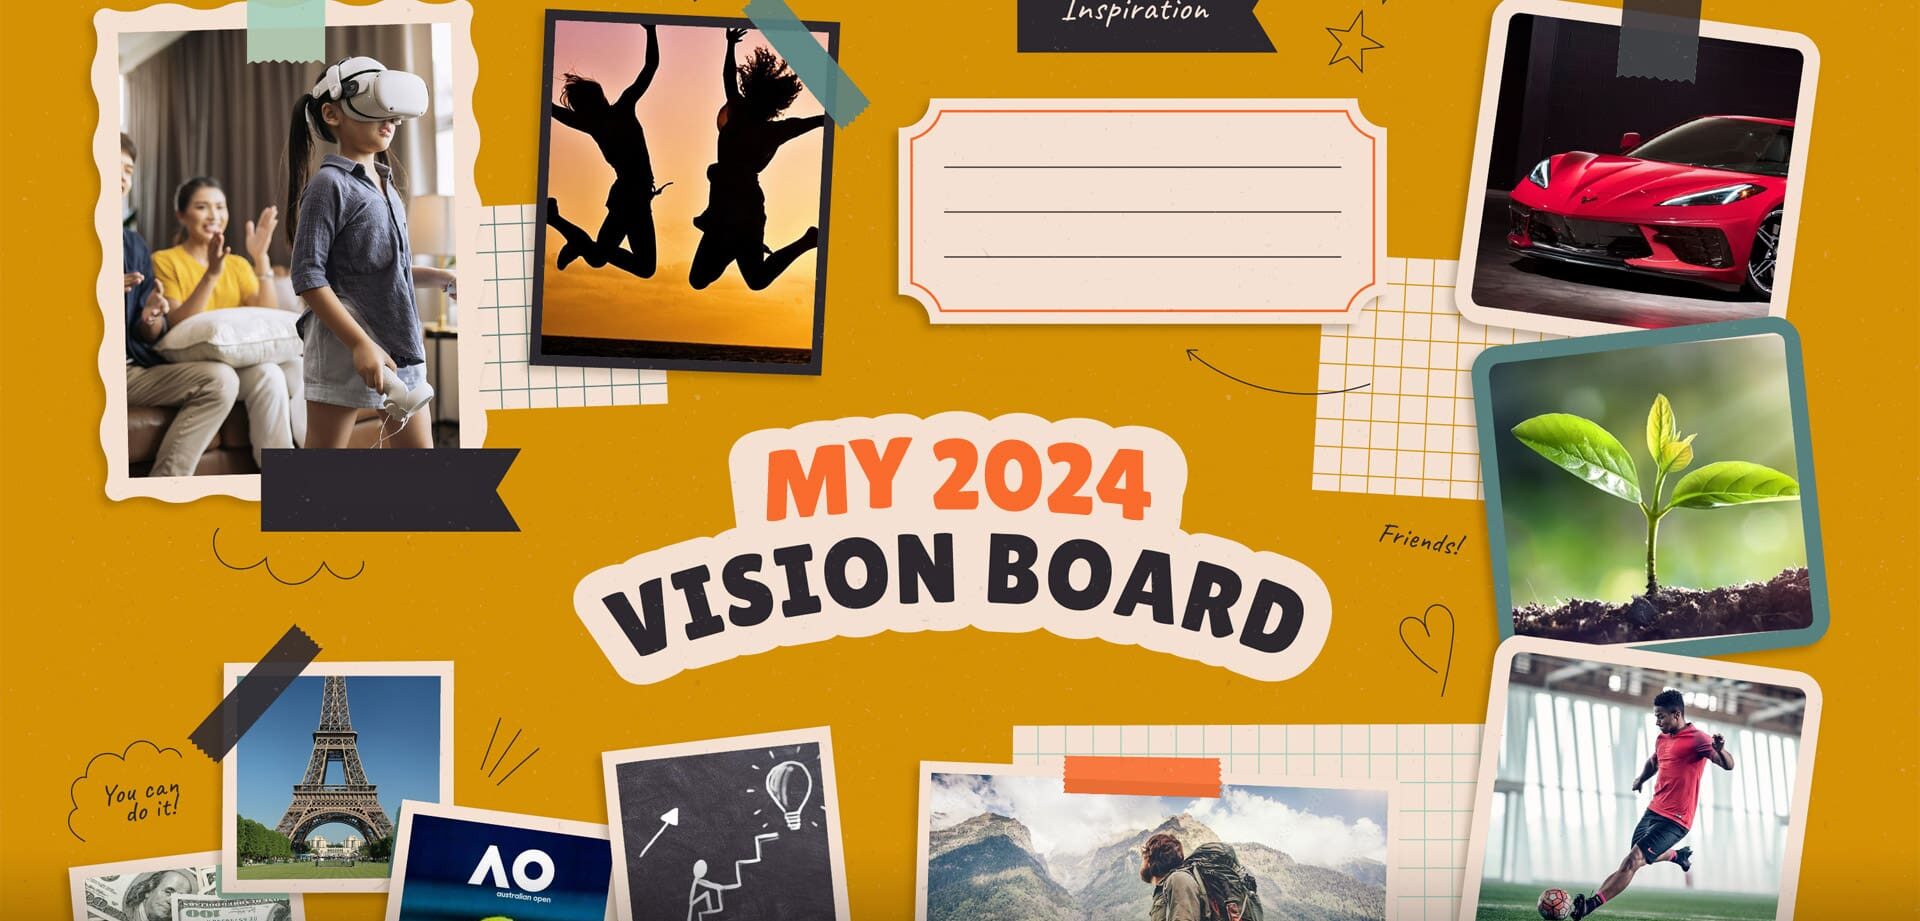 δημιουργία Vision Board για Android και iPhone